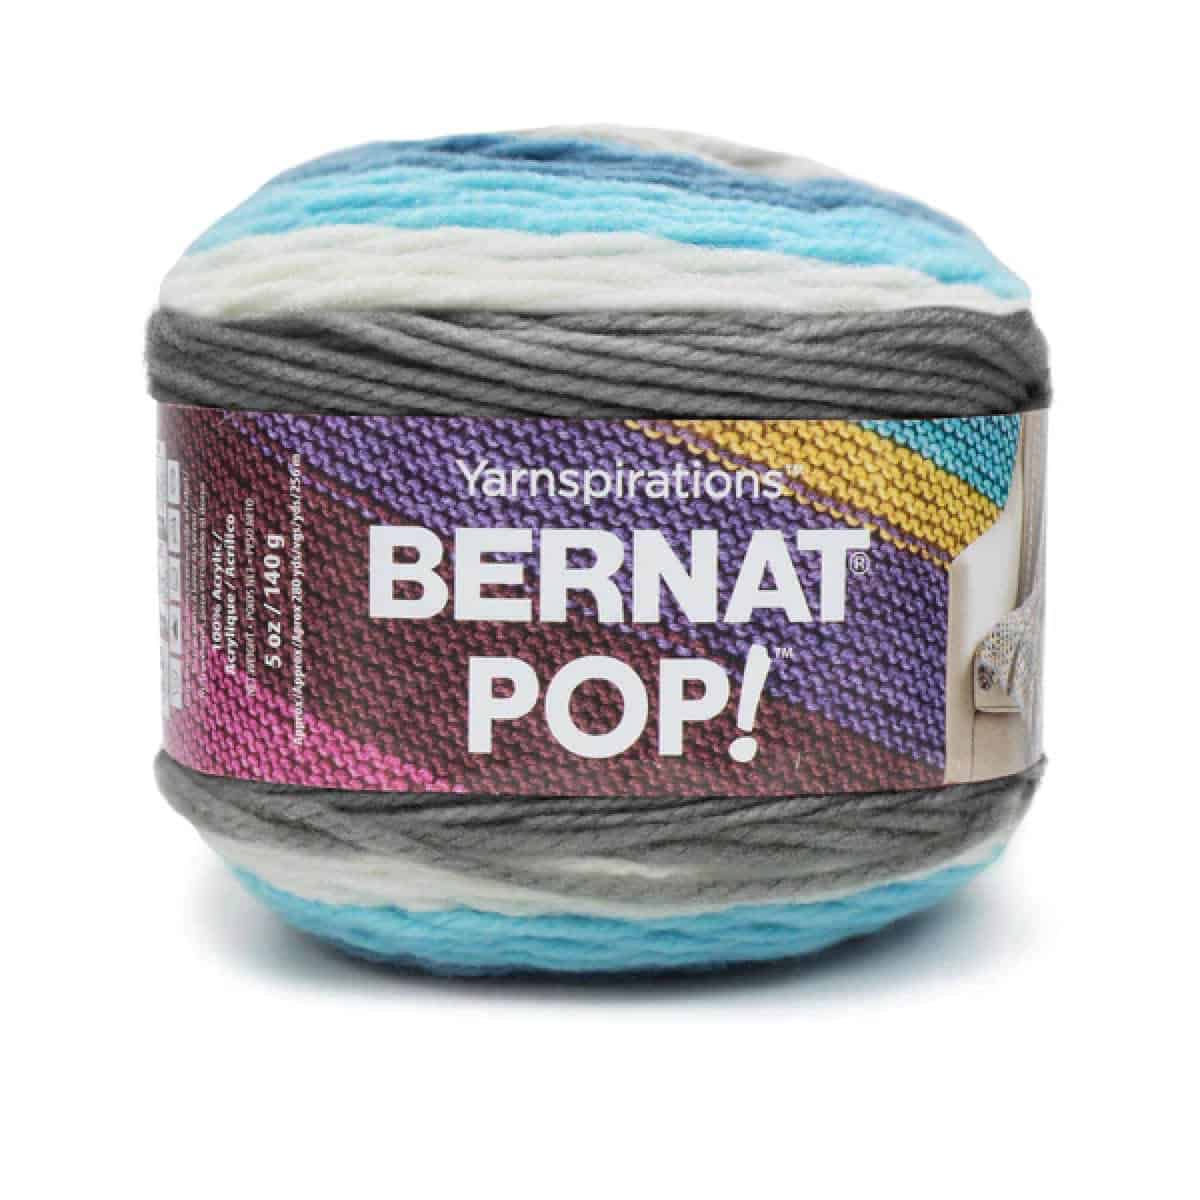 Bernat Pop Yarn Product